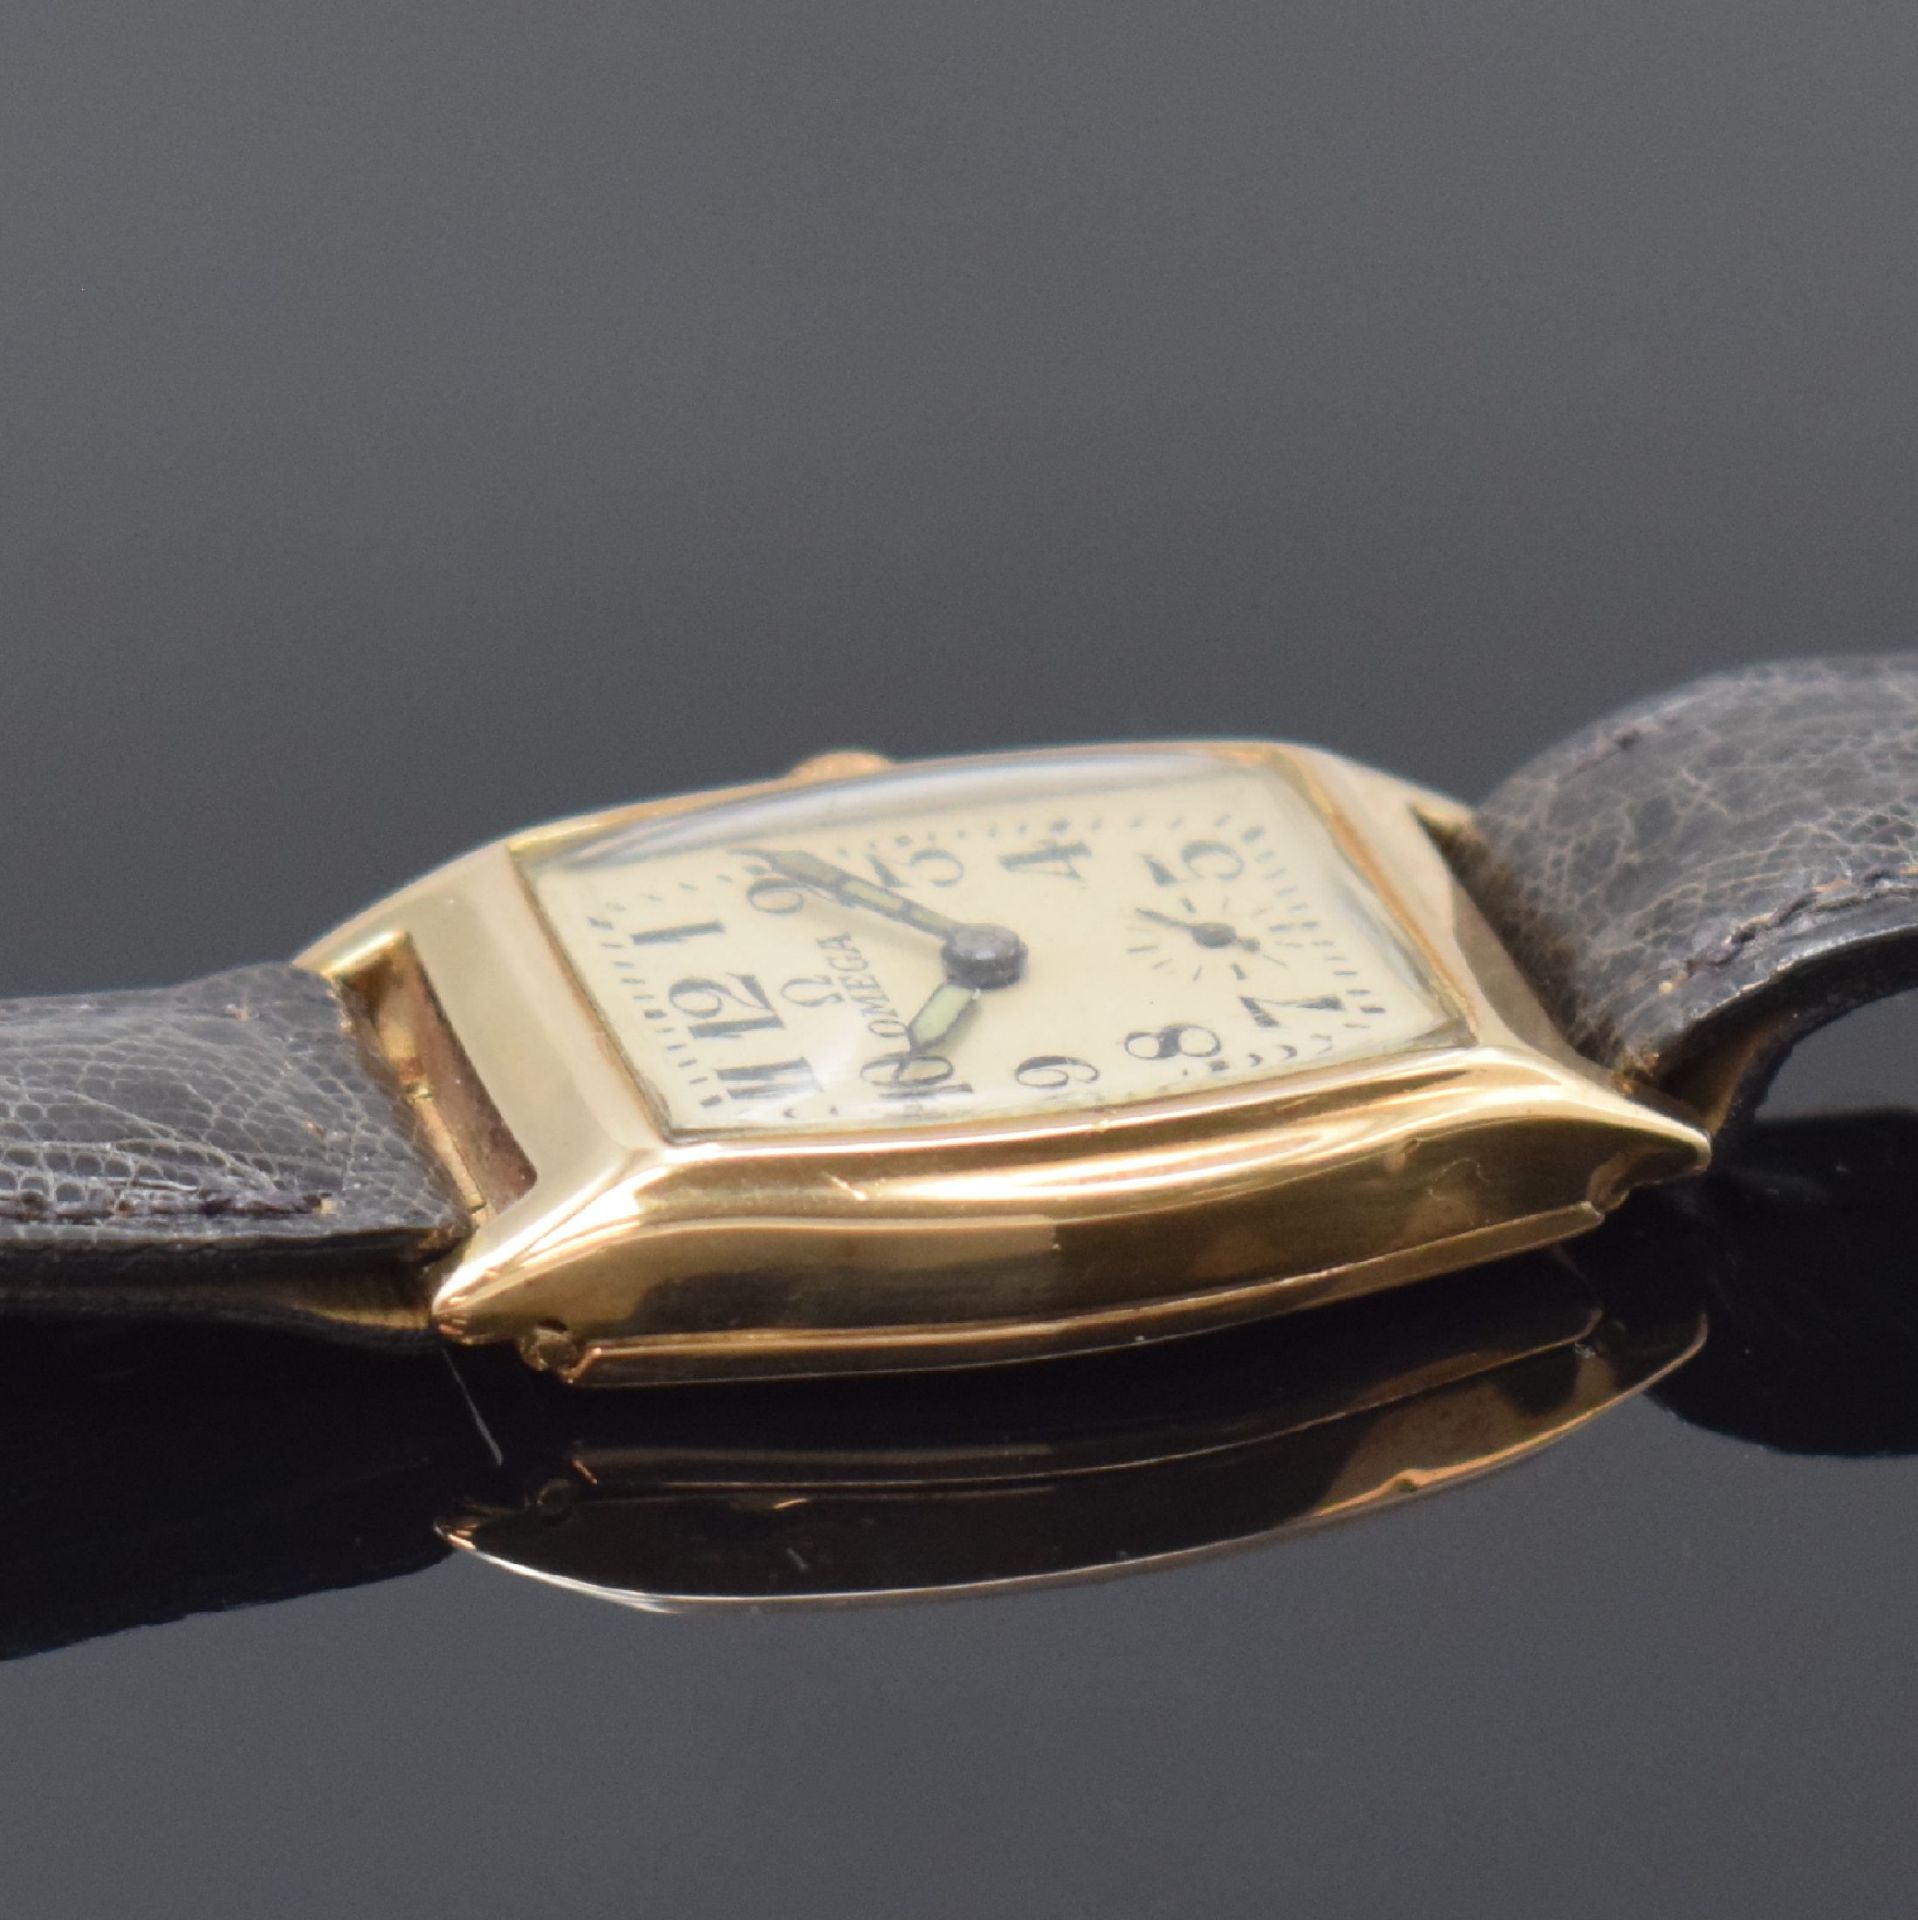 OMEGA Armbanduhr in Rotgold 9k, Schweiz / USA um 1938, - Image 4 of 7